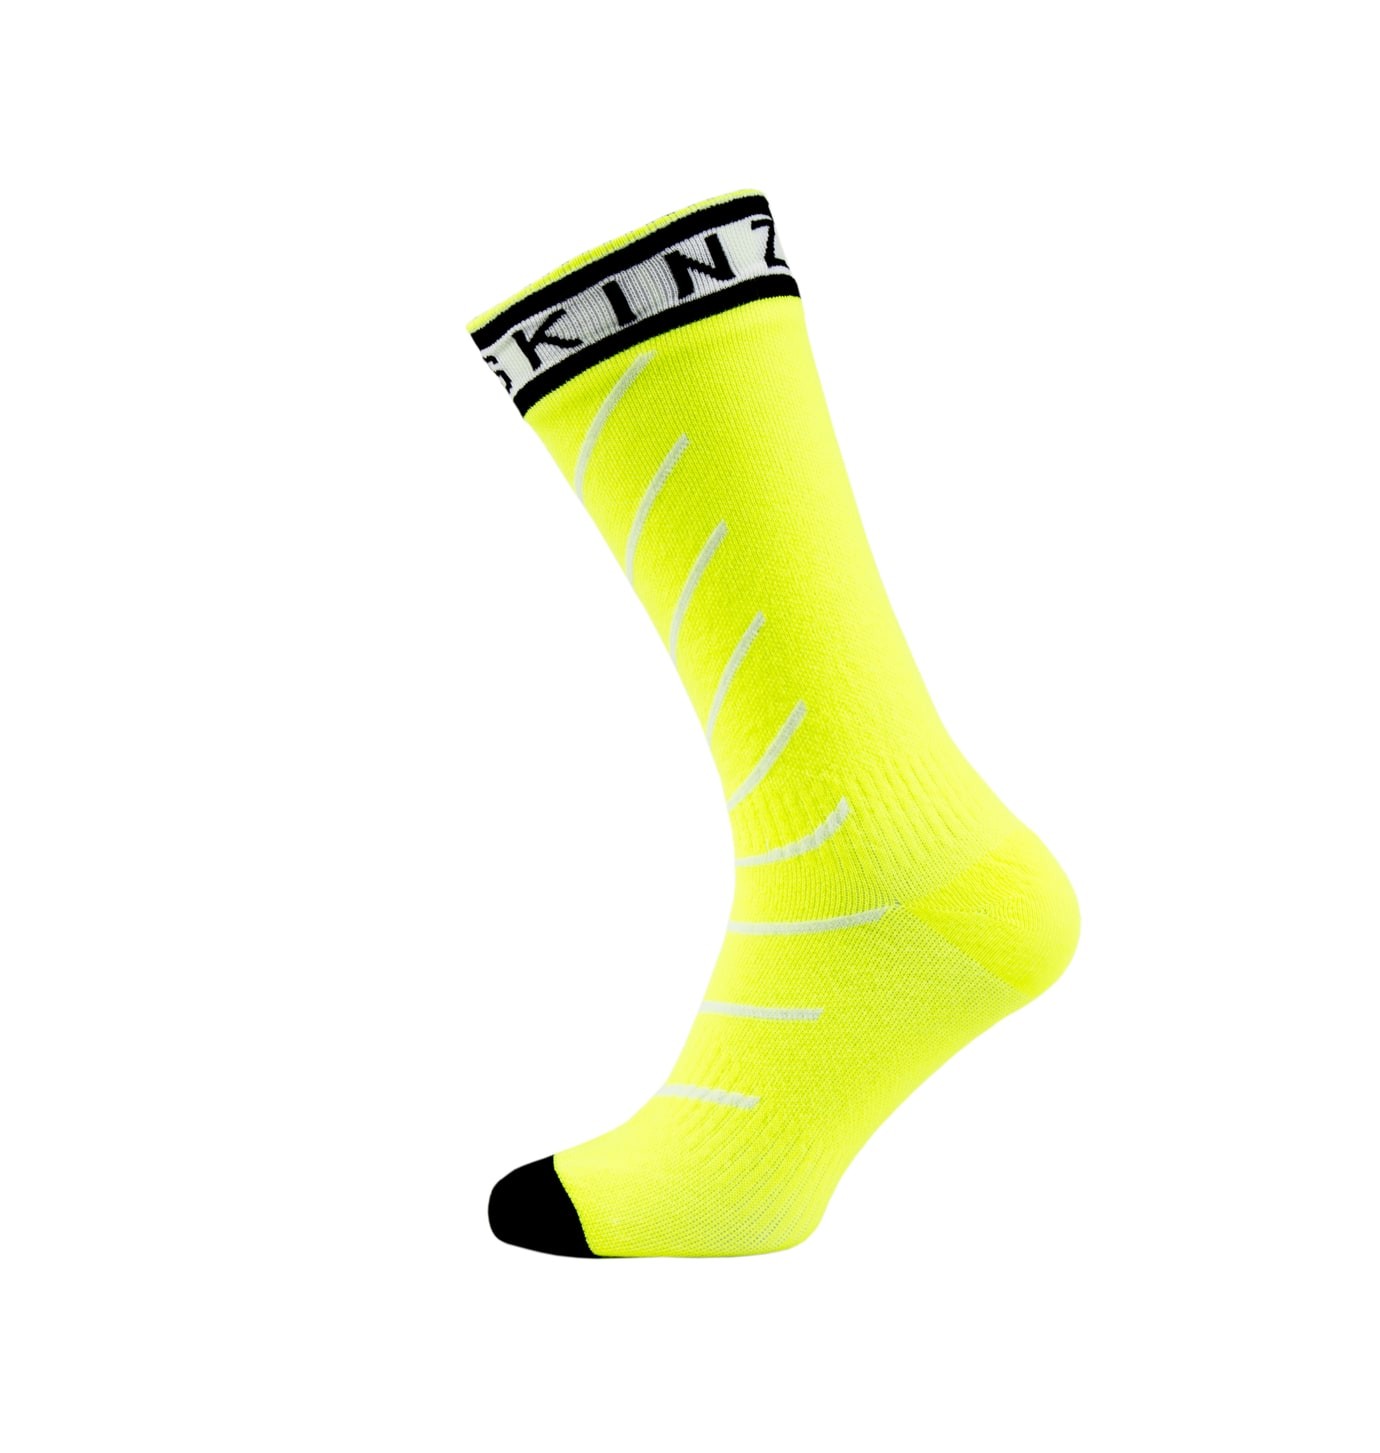 Sealskinz super thin pro mid chaussette de cyclisme imperméable avec hydrostop neon jaune blanc noir